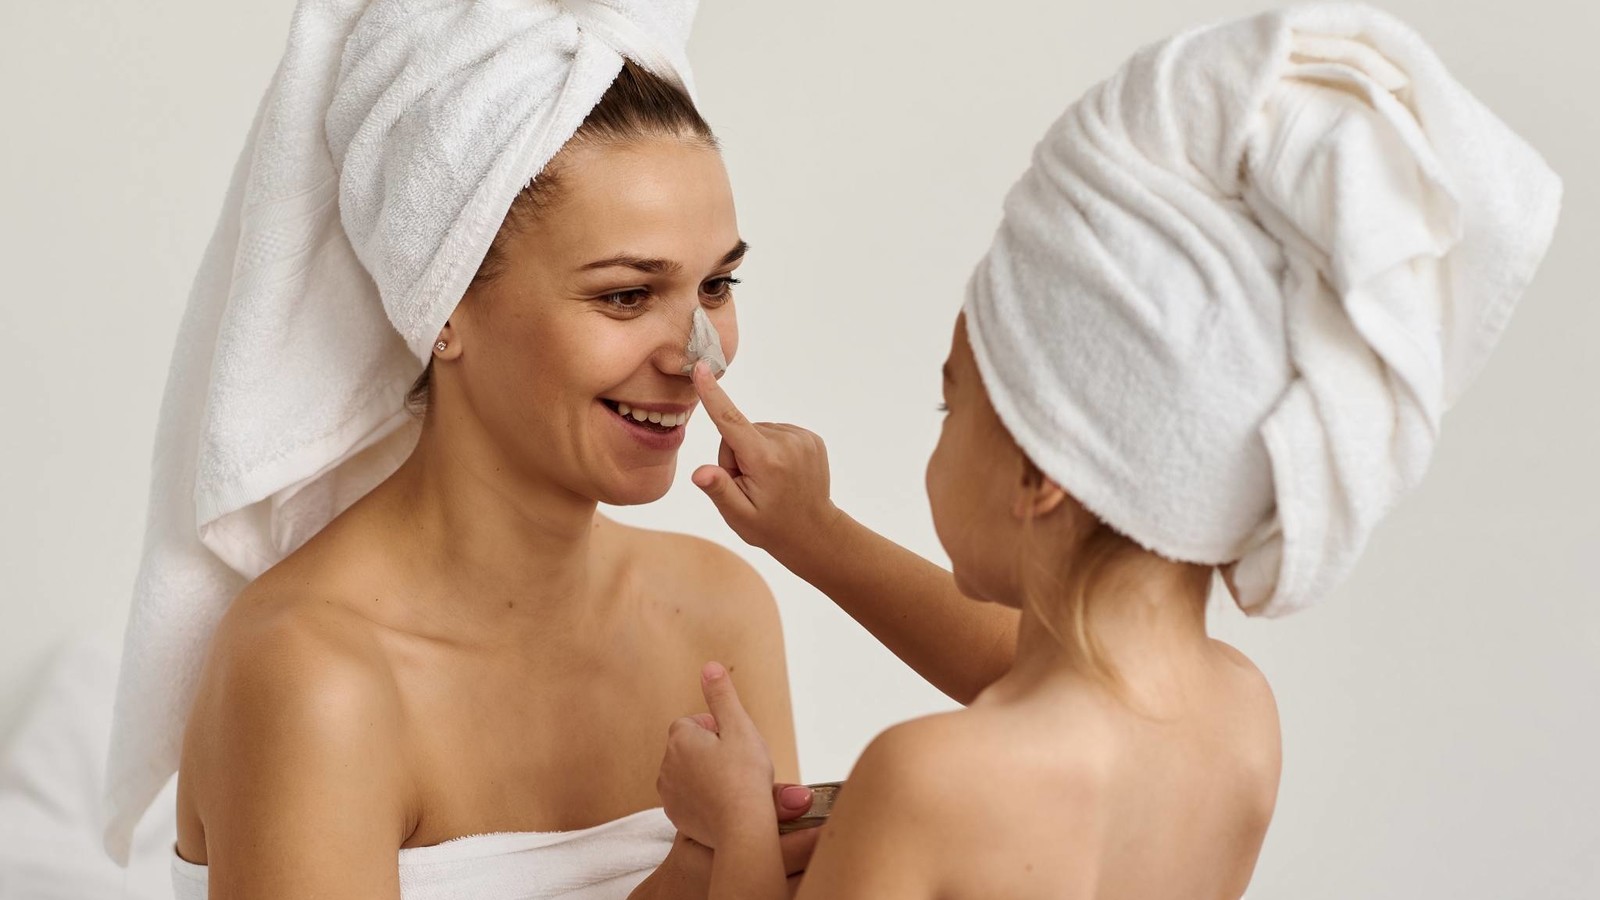 Handdoeken 9 Tips voor het wassen van nieuwe en bestaande badhanddoeken - WasParfum